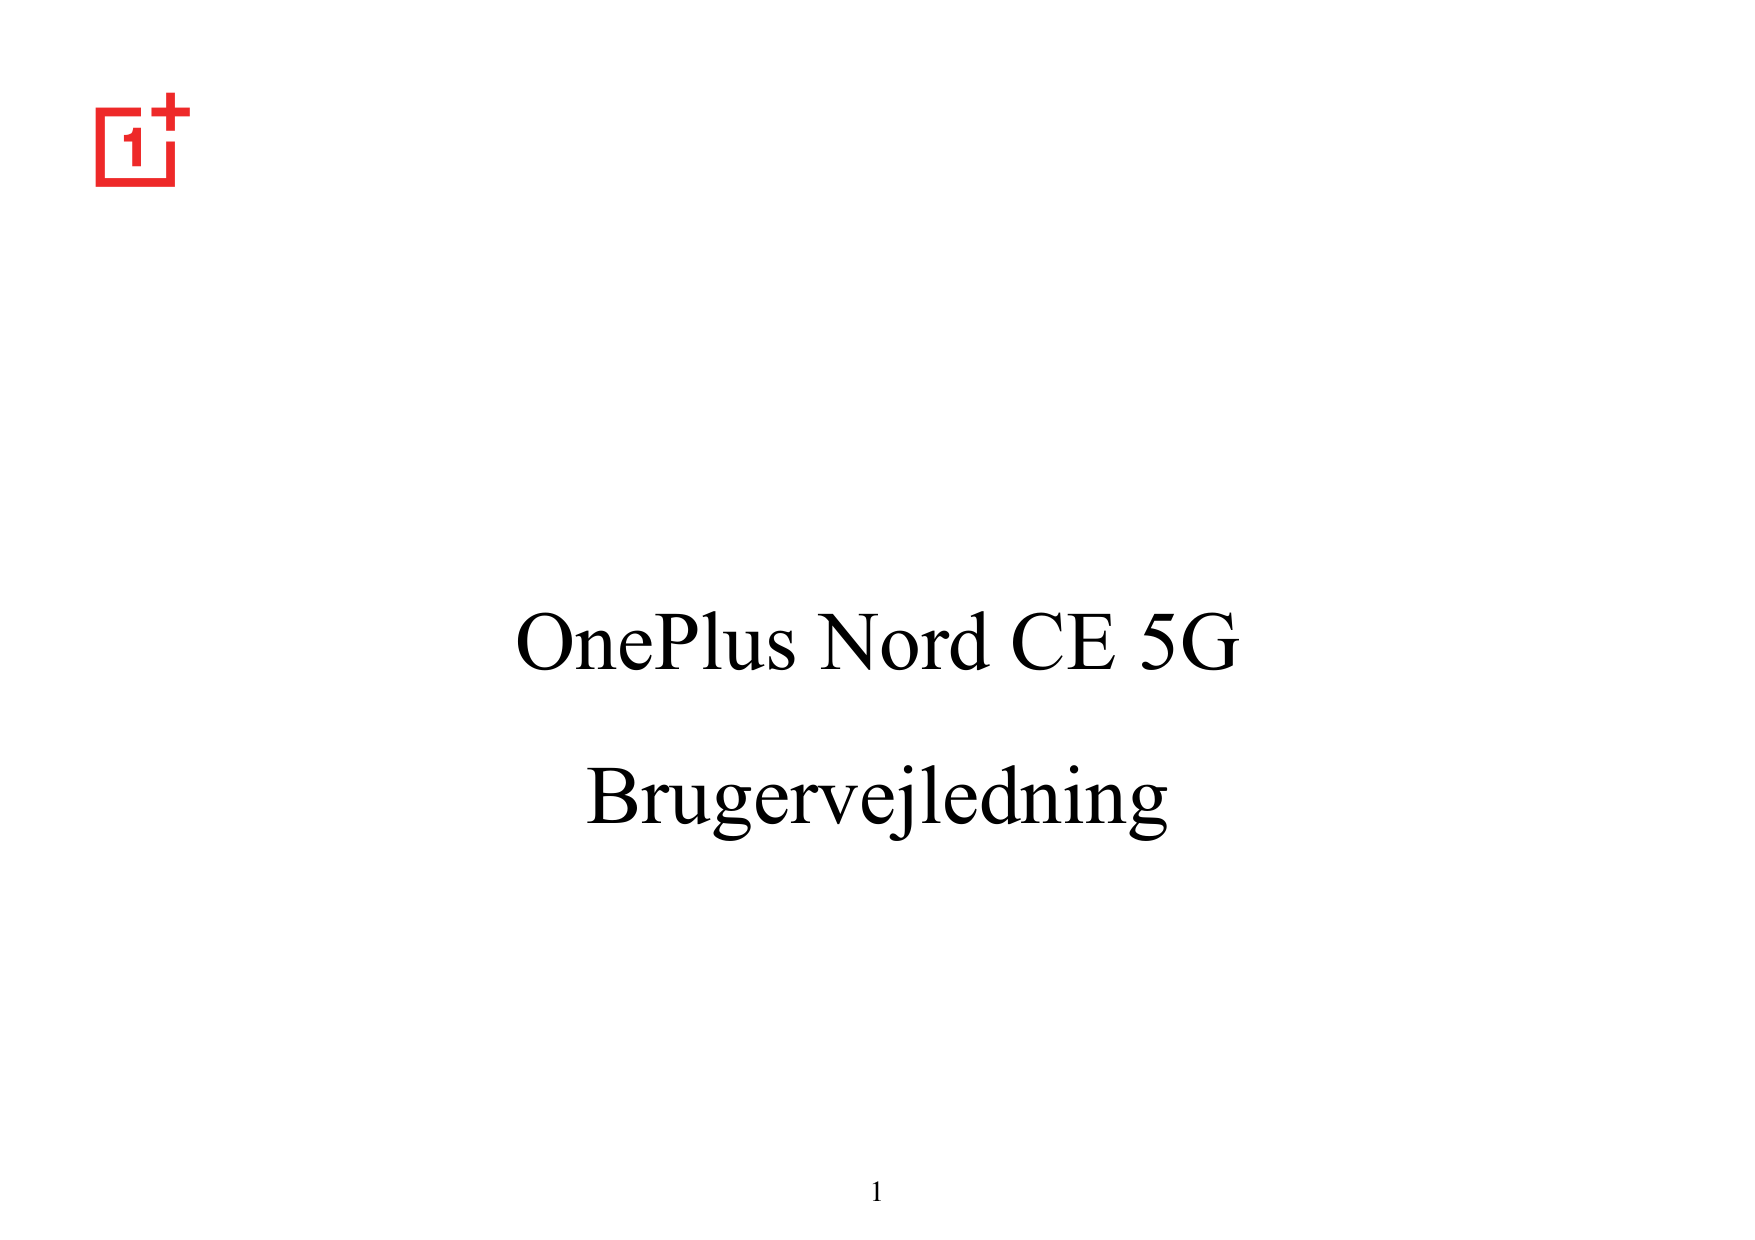 OnePlus Nord CE 5GBrugervejledning1